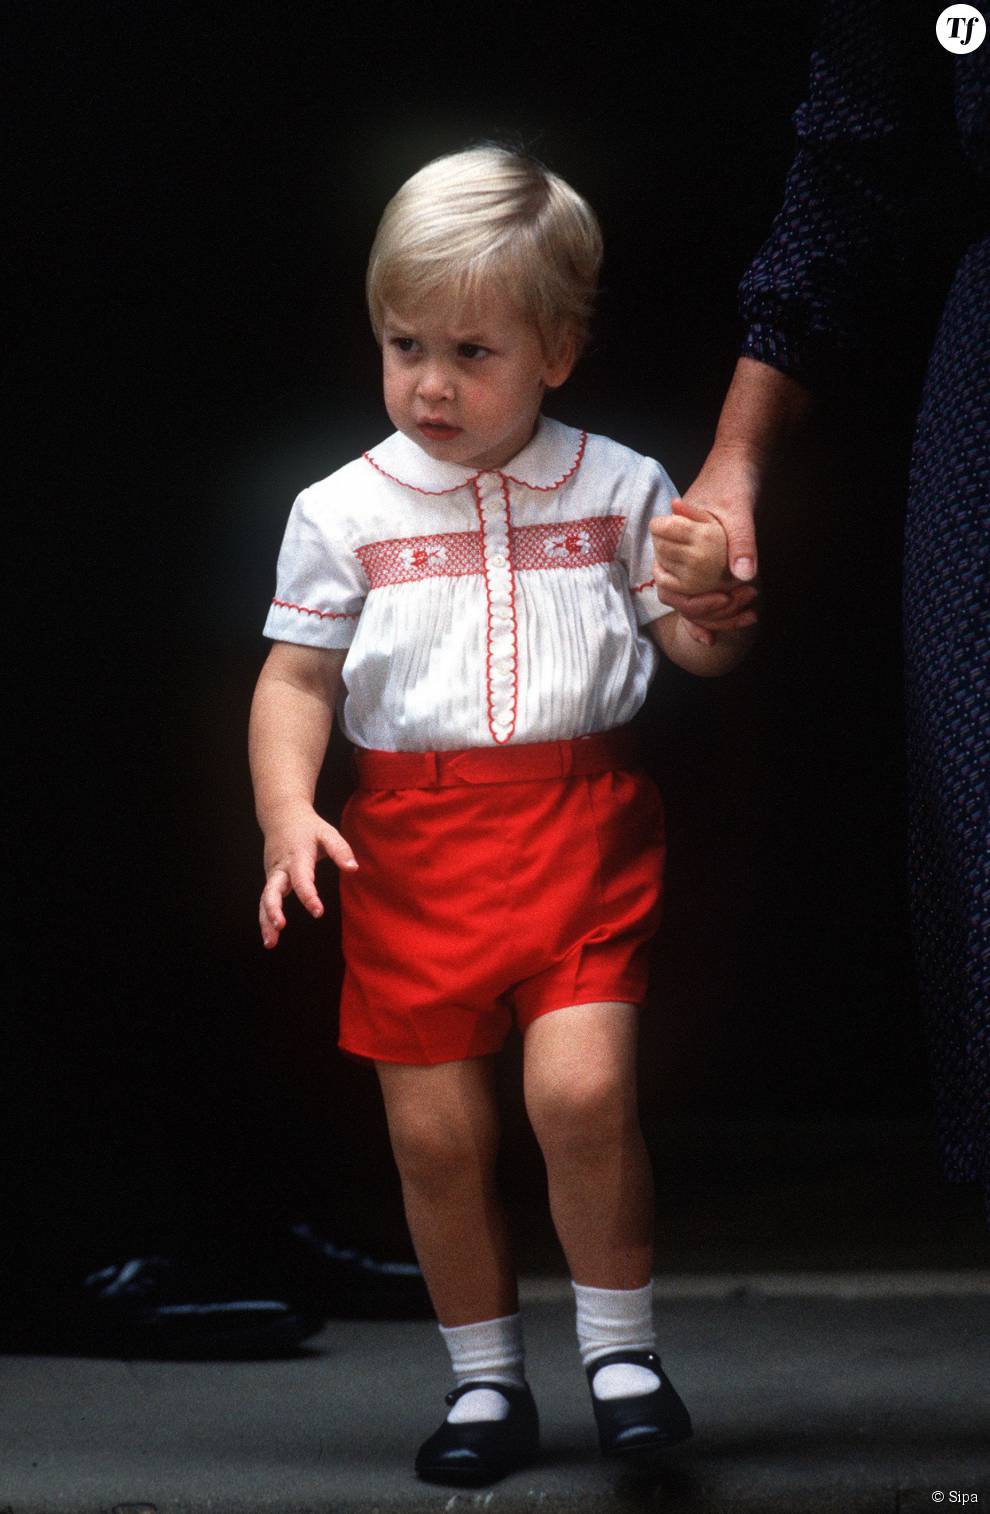   Le jeune Prince William, accompagné par sa nourrice Barbara Barnes, quittant l&#039;hôpital St Mary à Londres le 16 septembre 1984 après avoir rencontré son petit frère, le Prince Harry.  